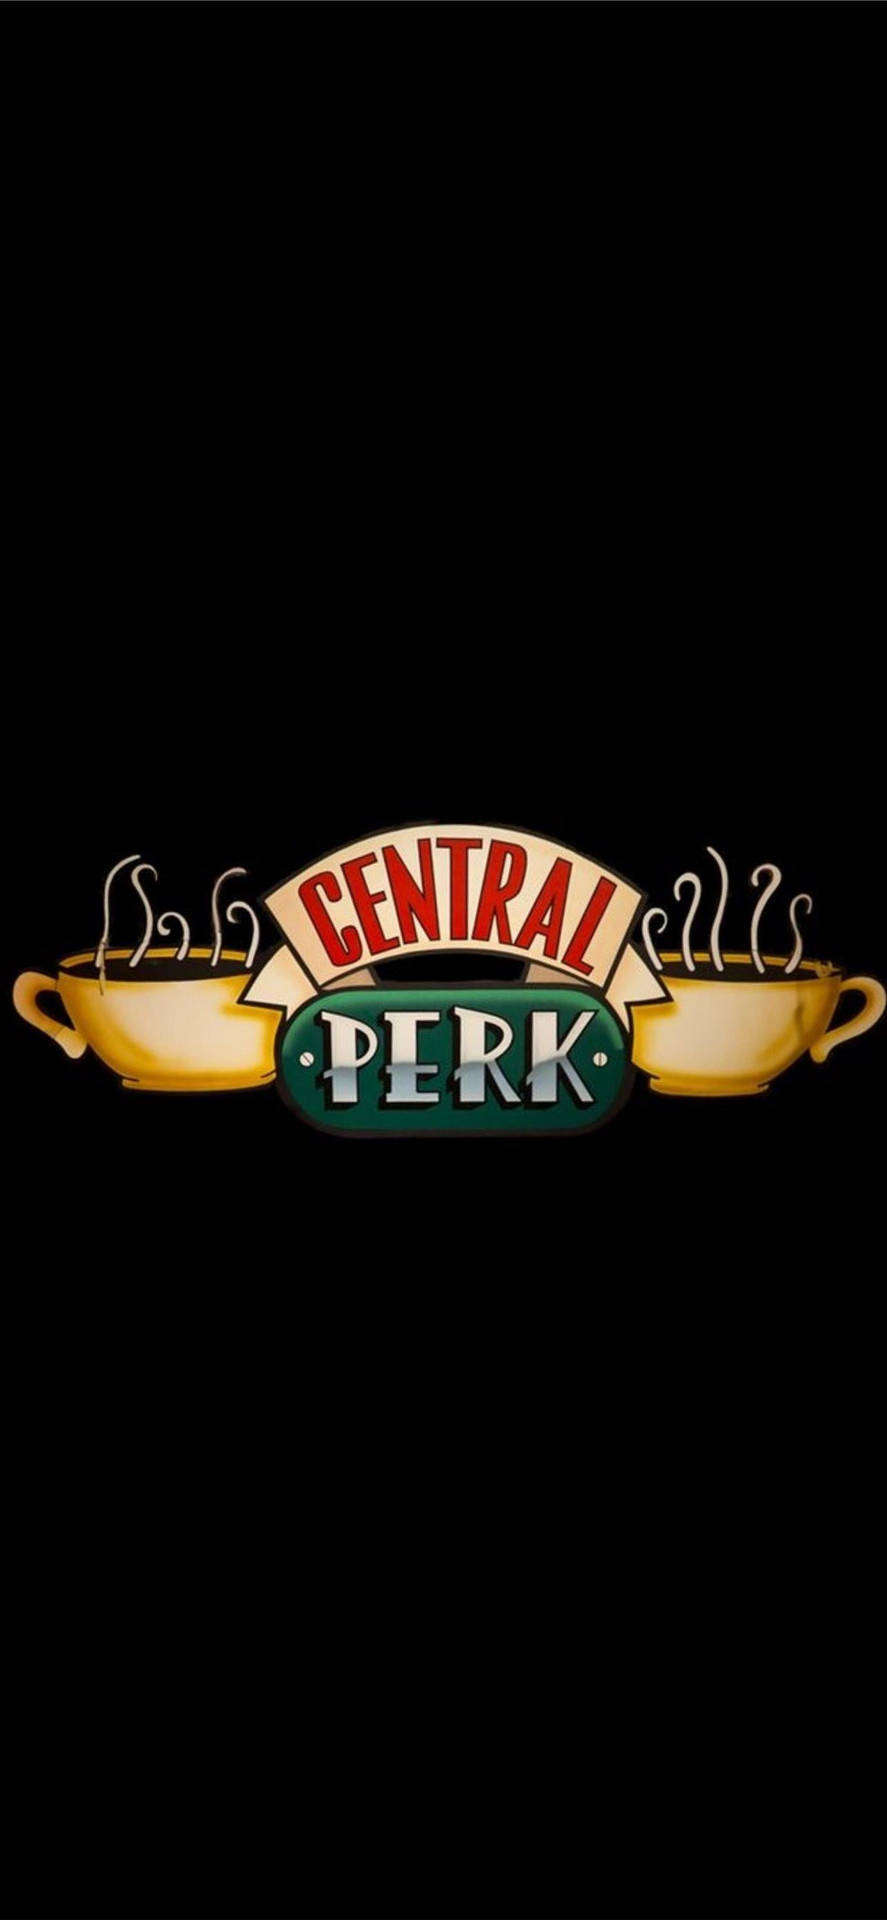 Logotipocentral Perk Da Série Friends Para Papel De Parede De Computador Ou Celular. Papel de Parede